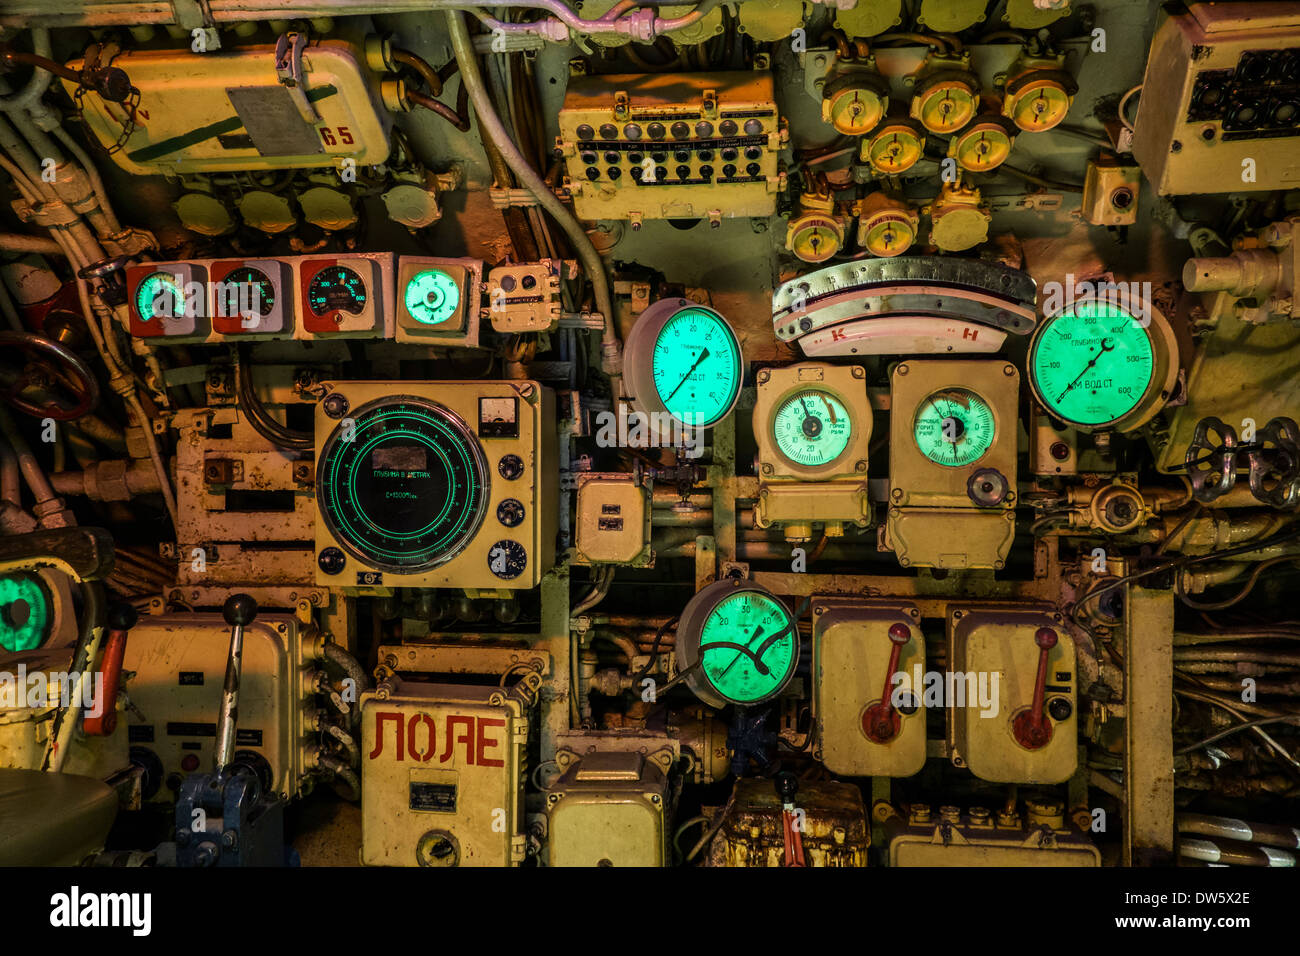 Los indicadores de color verde, interruptores y controles sobre los instrumentos de la sala de control de operaciones / dentro de submarino ruso B-143 / U-480 Foxtrot Foto de stock